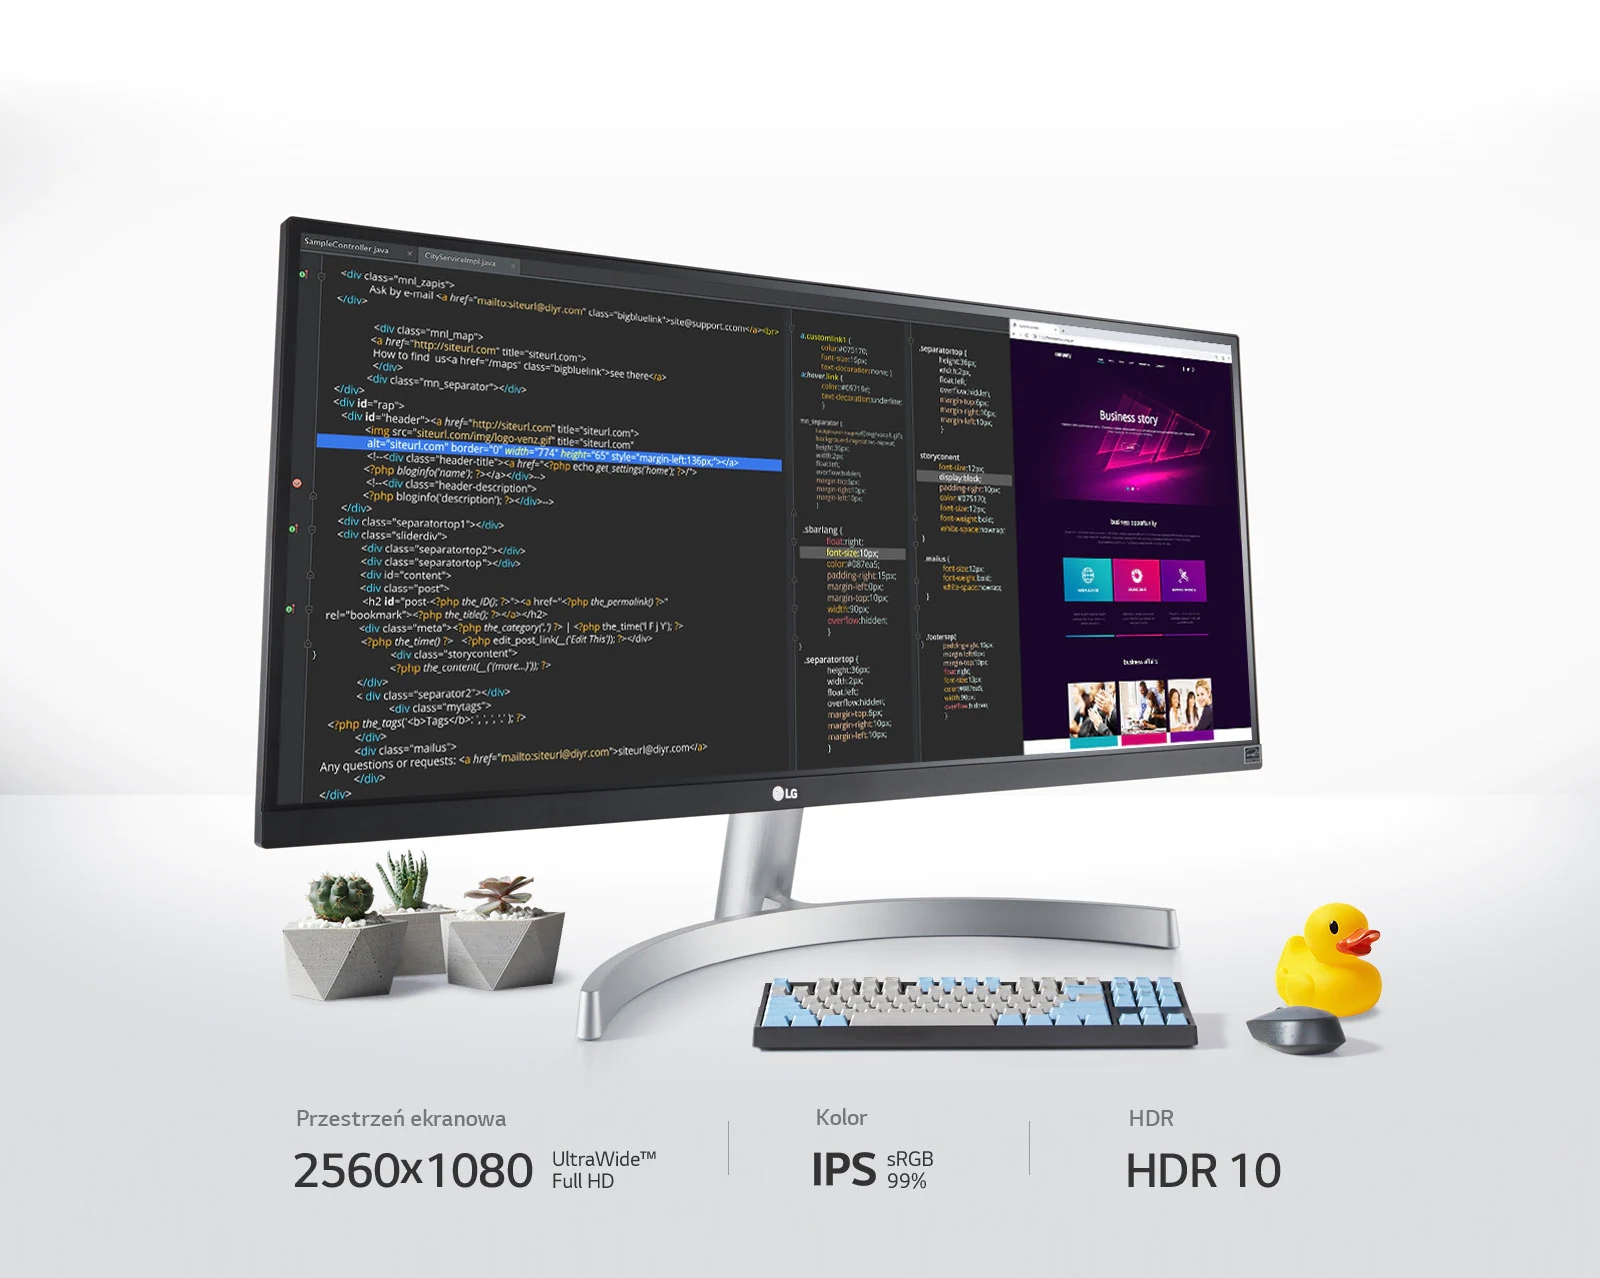 Дивіться більше та створюйте найкращий контент на моніторі IPS UltraWide™ Full HD з роздільною здатністю 2560x1080, 99% охопленням sRGB та технологією HDR 10.